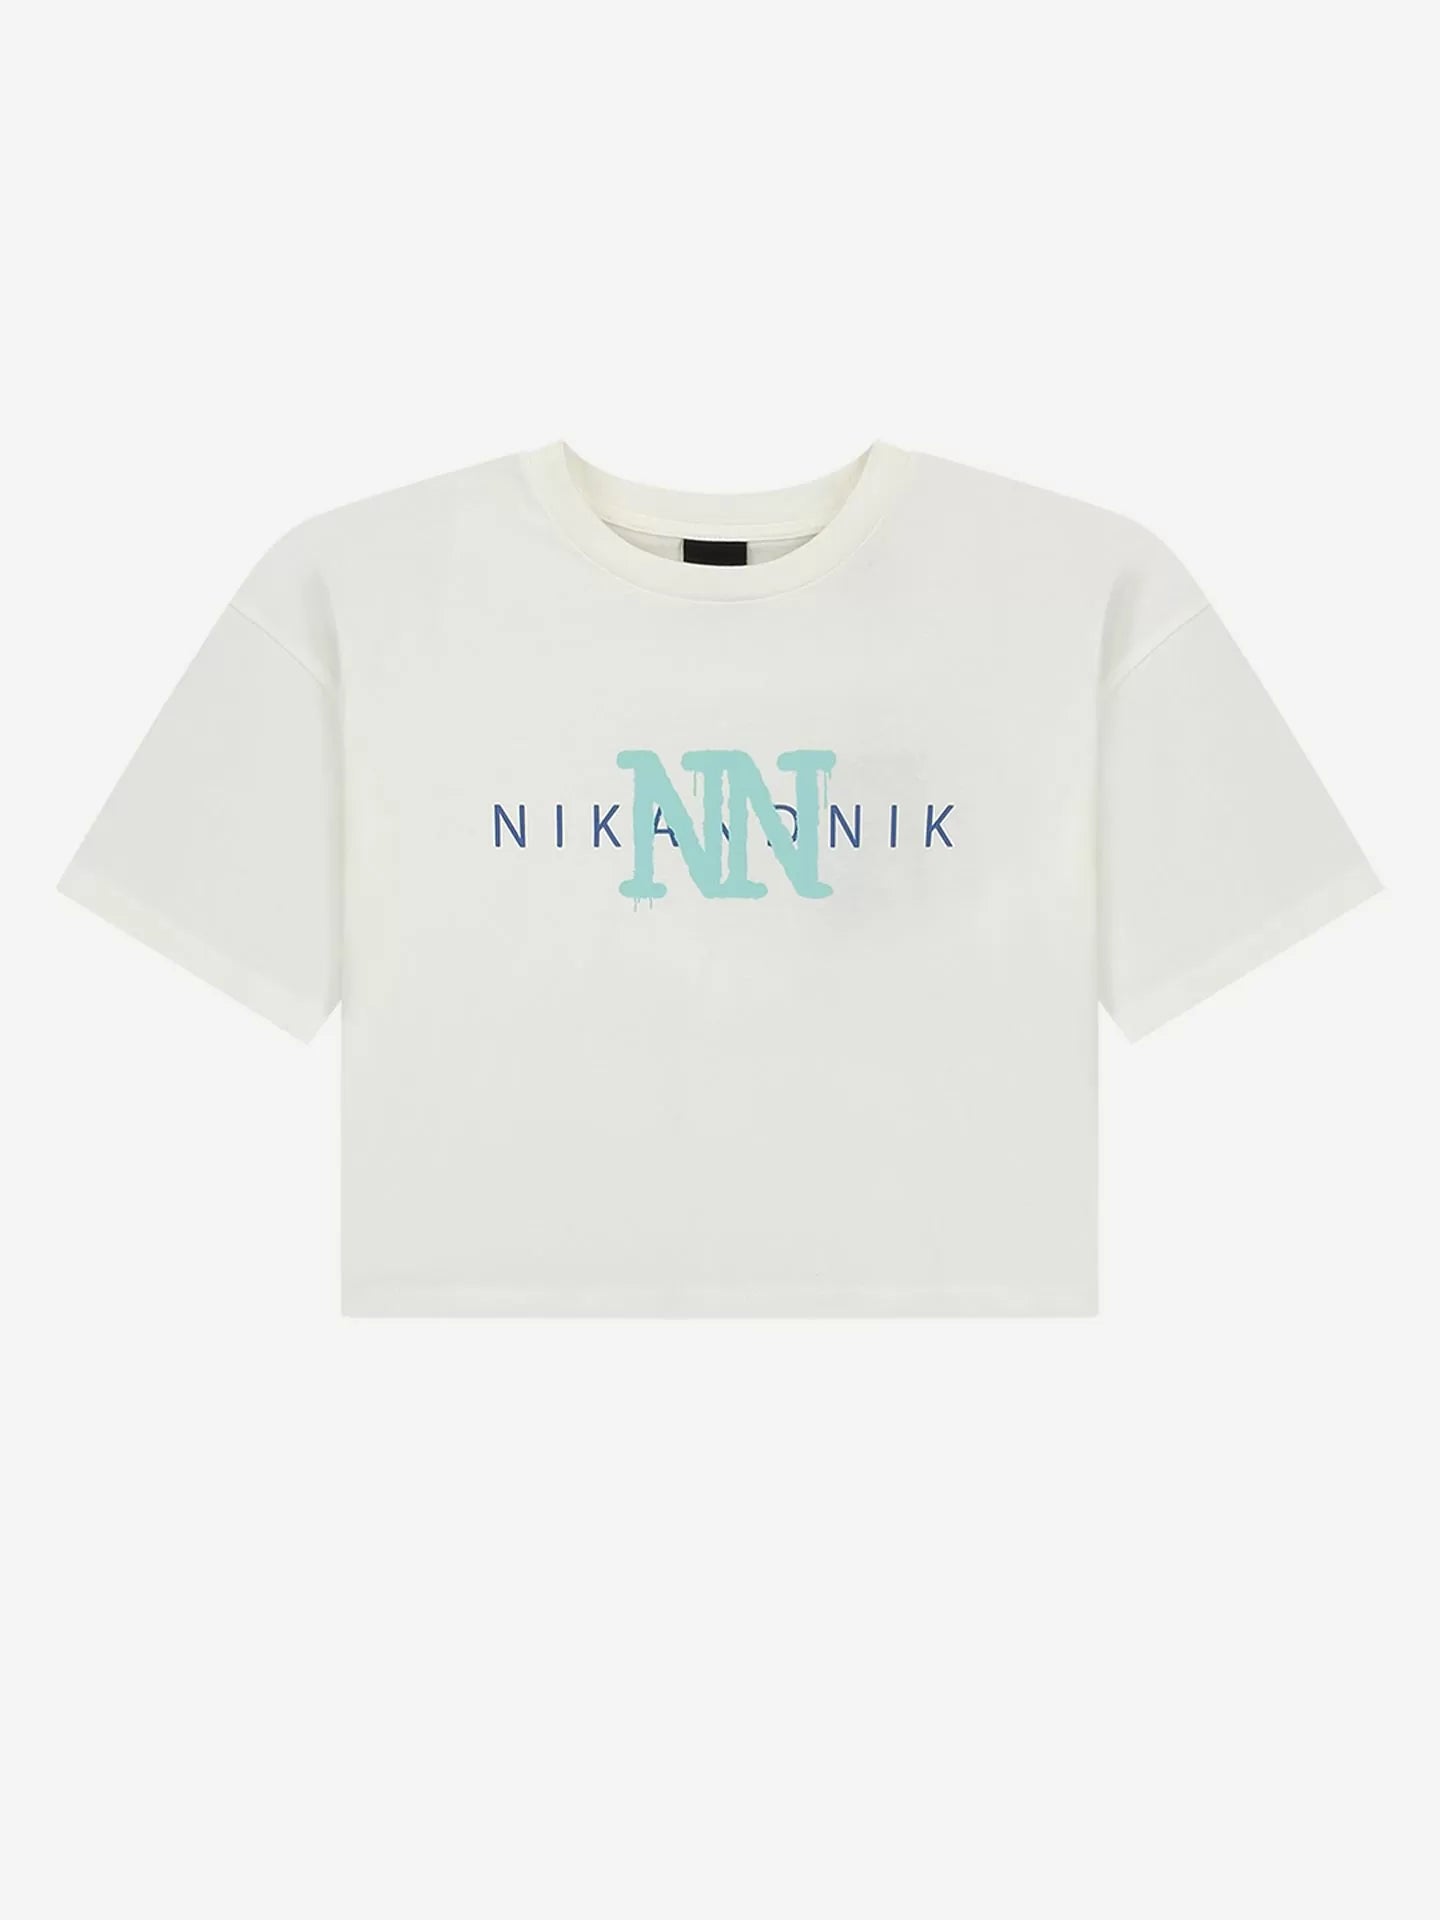 Nik&Nik t-shirt met NN print